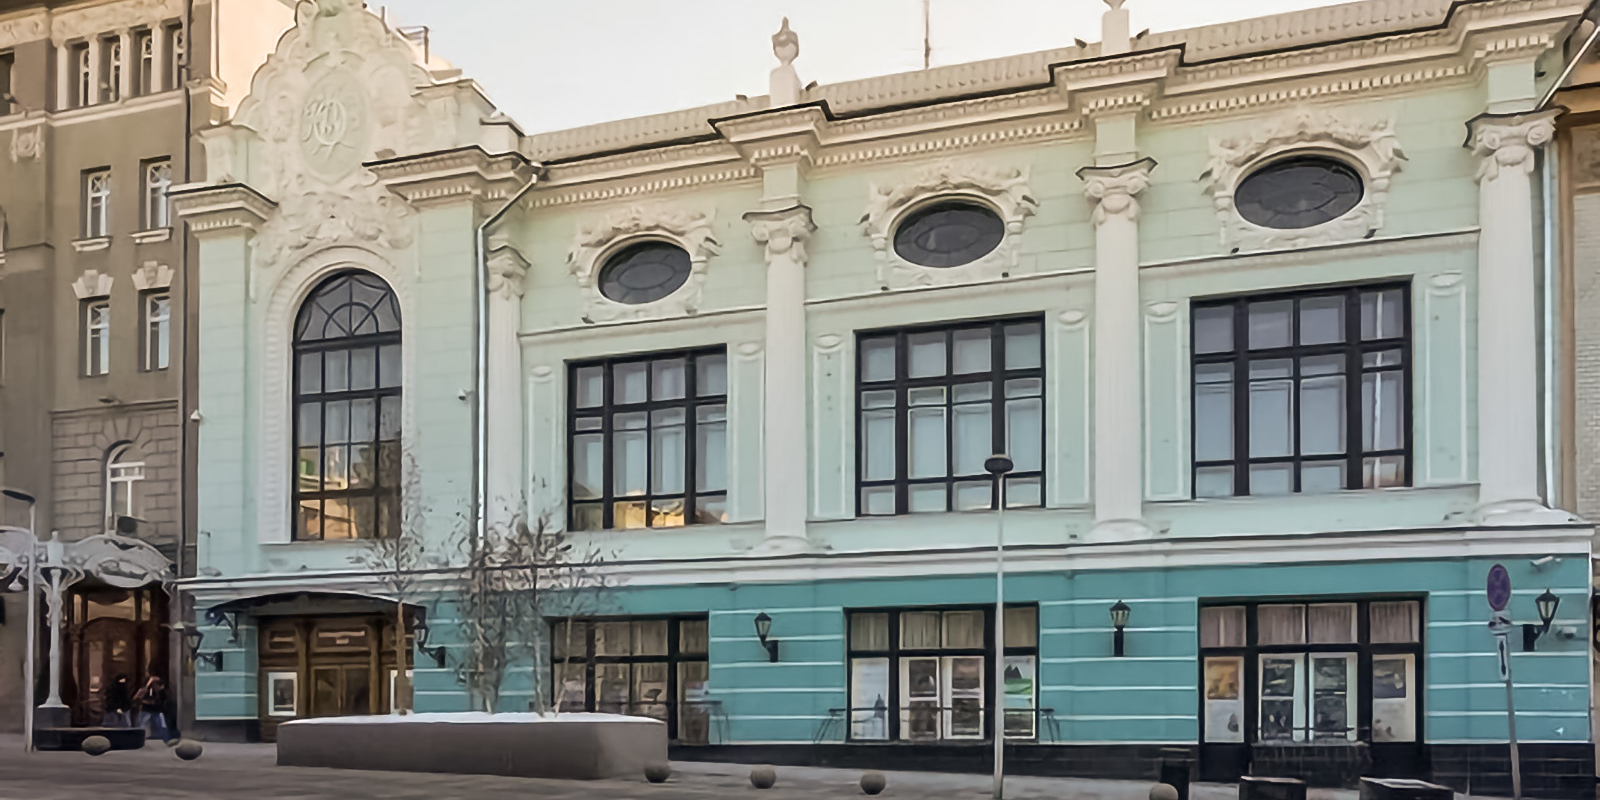 Дом расположен в Мещанском районе по адресу: улица Пушечная, дом 4, строение 2. Фото: сайт мэра Москвы